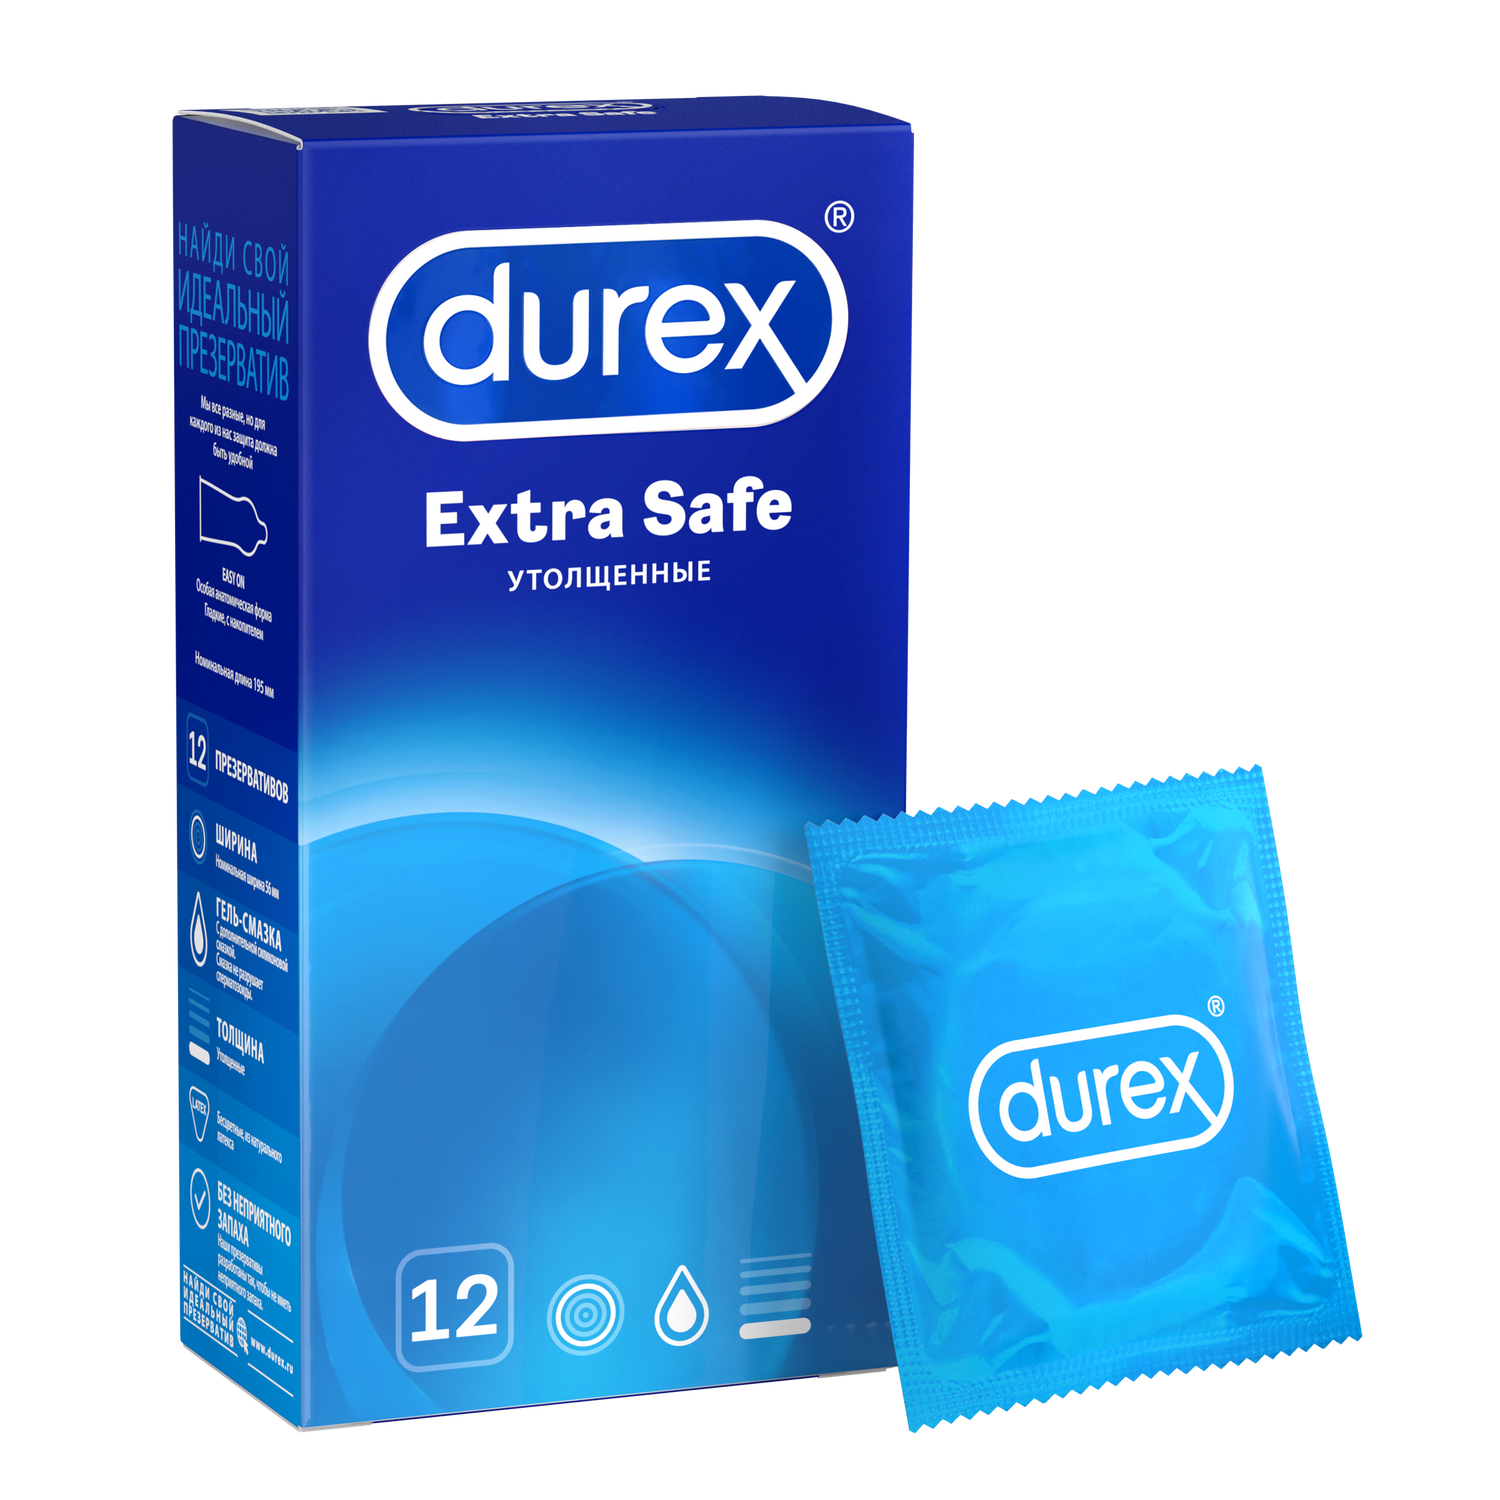 Презервативы Durex Extra Safe утолщенные, 12 шт. комплект презервативы durex invisible xxl ультратонкие 3 шт х 2 уп